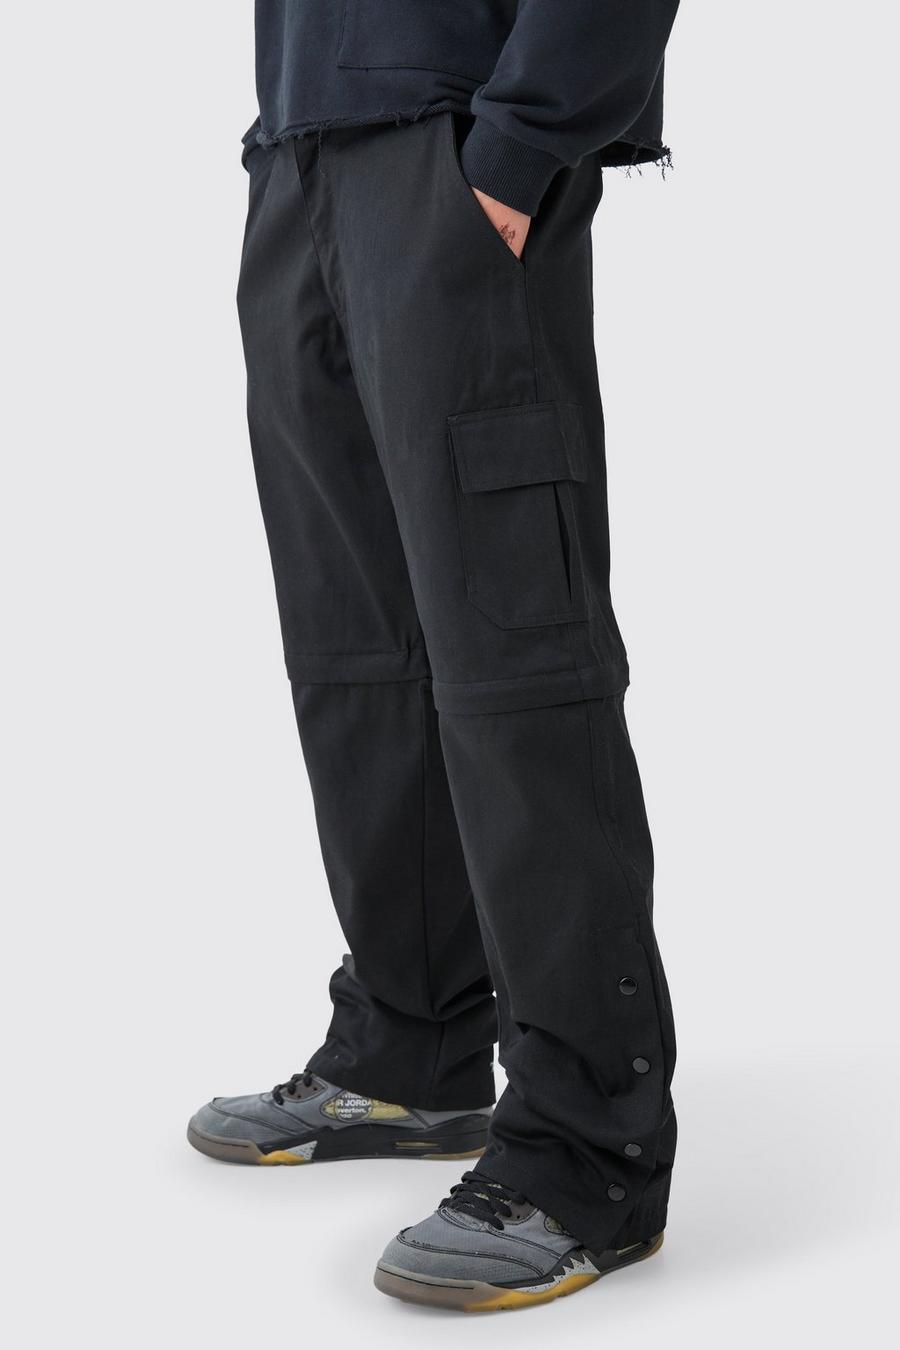 Pantaloni Cargo rilassati in twill con vita fissa, bottoni a pressione sul fondo e zip, Black image number 1